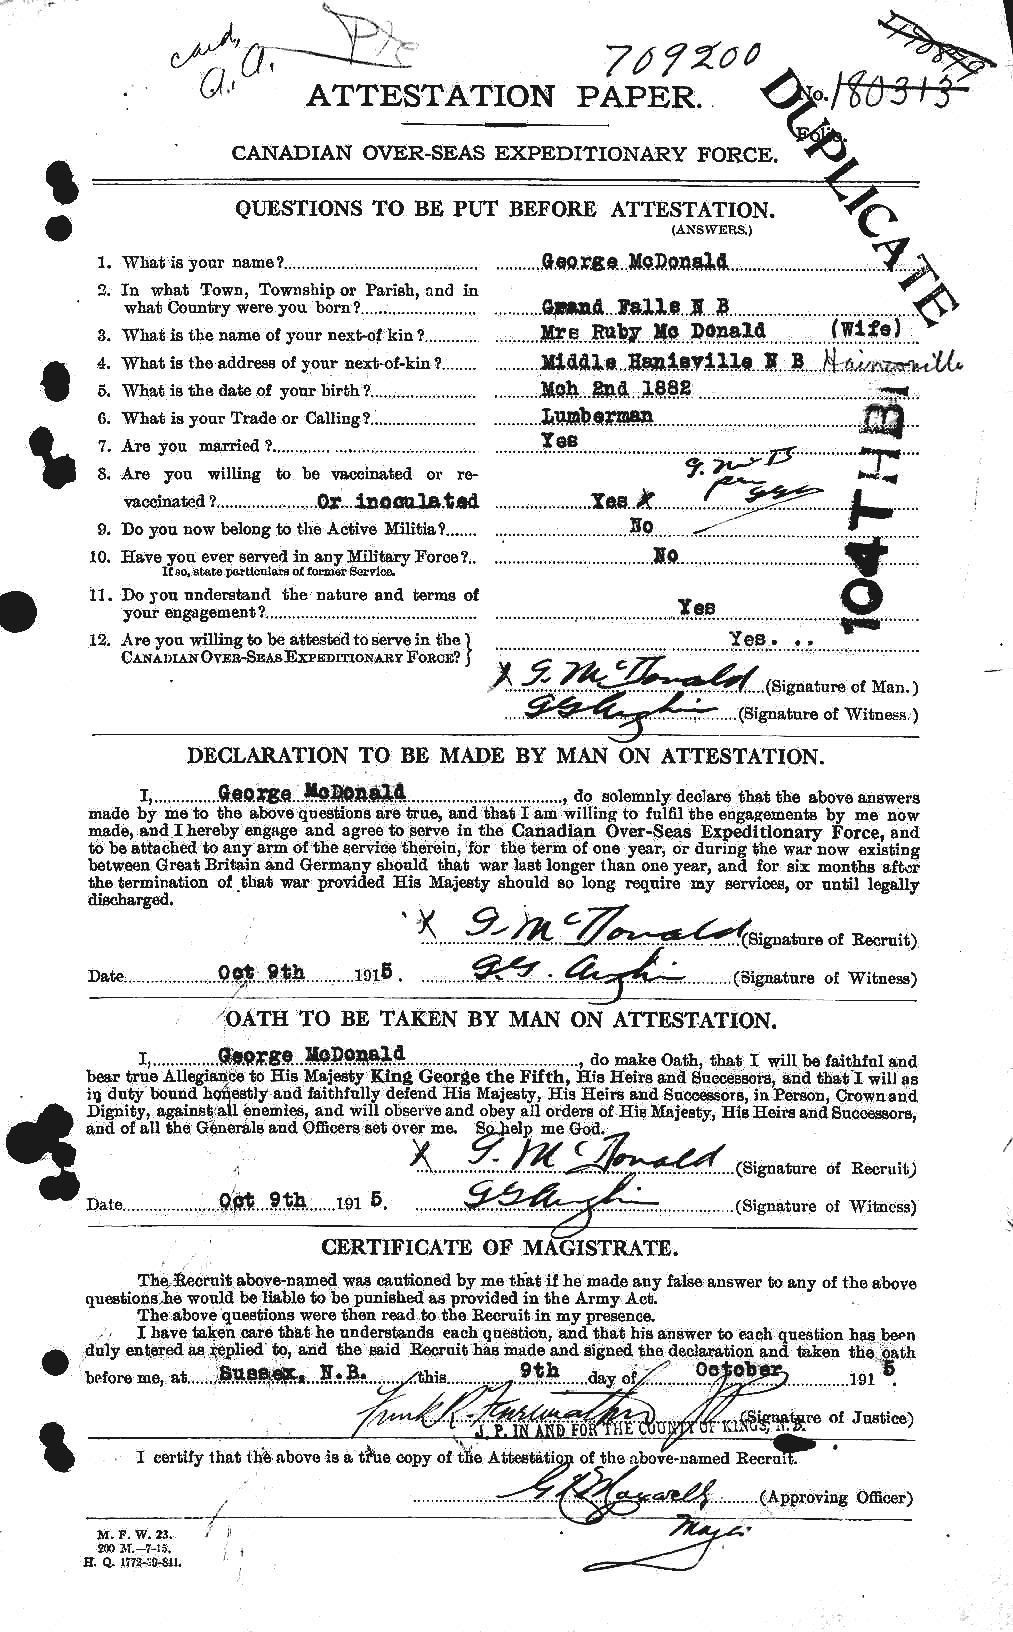 Dossiers du Personnel de la Première Guerre mondiale - CEC 518765a